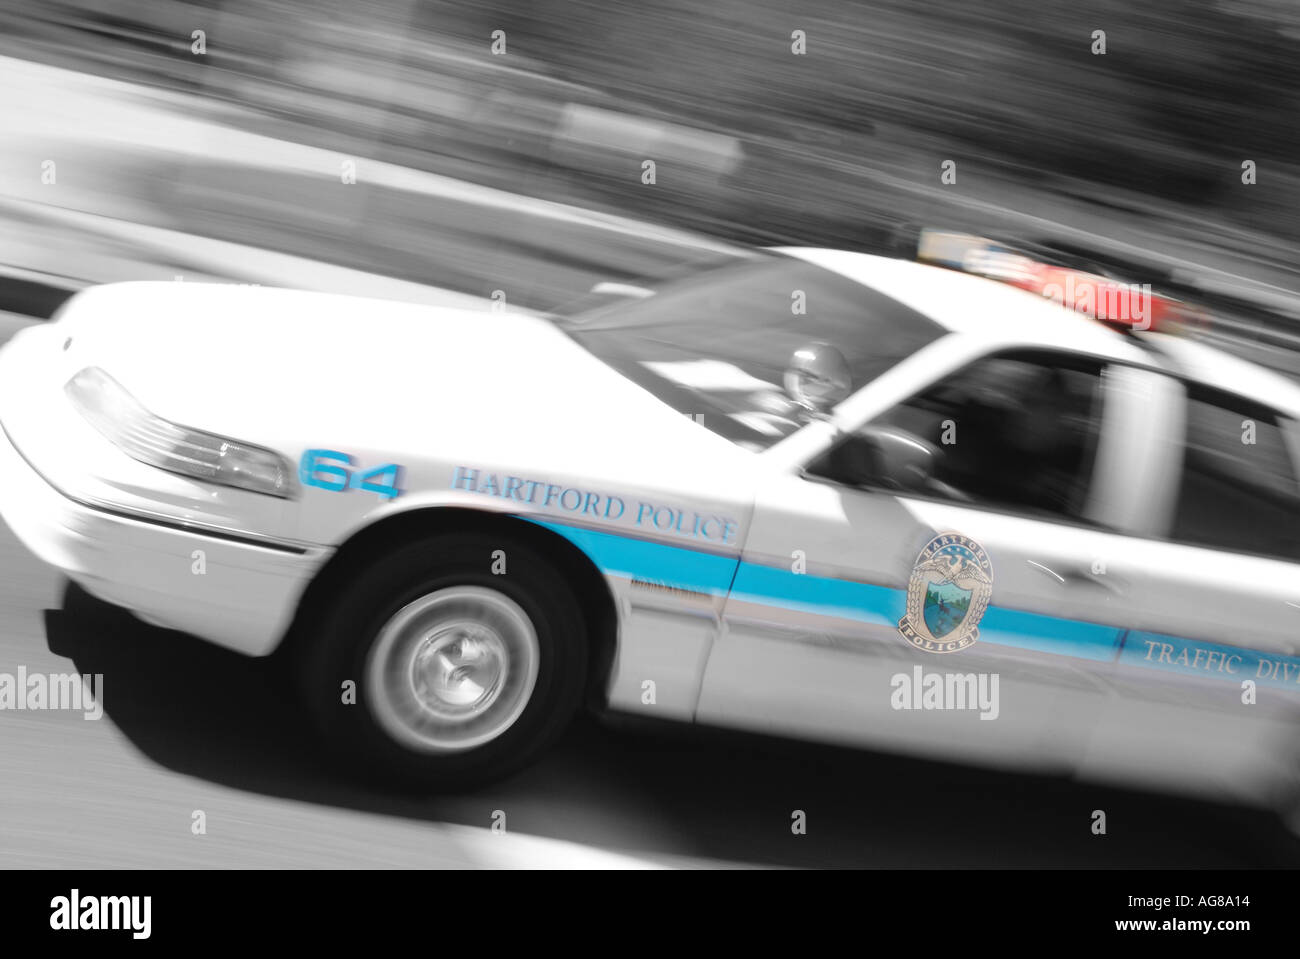 amerikanische Polizei Auto-Verfolgungsjagd blinkende Licht Sirene Notfall roten blauen Hartford Connecticut Usa uns amerikanischer Polizist Räuber Verhaftung Cri Stockfoto